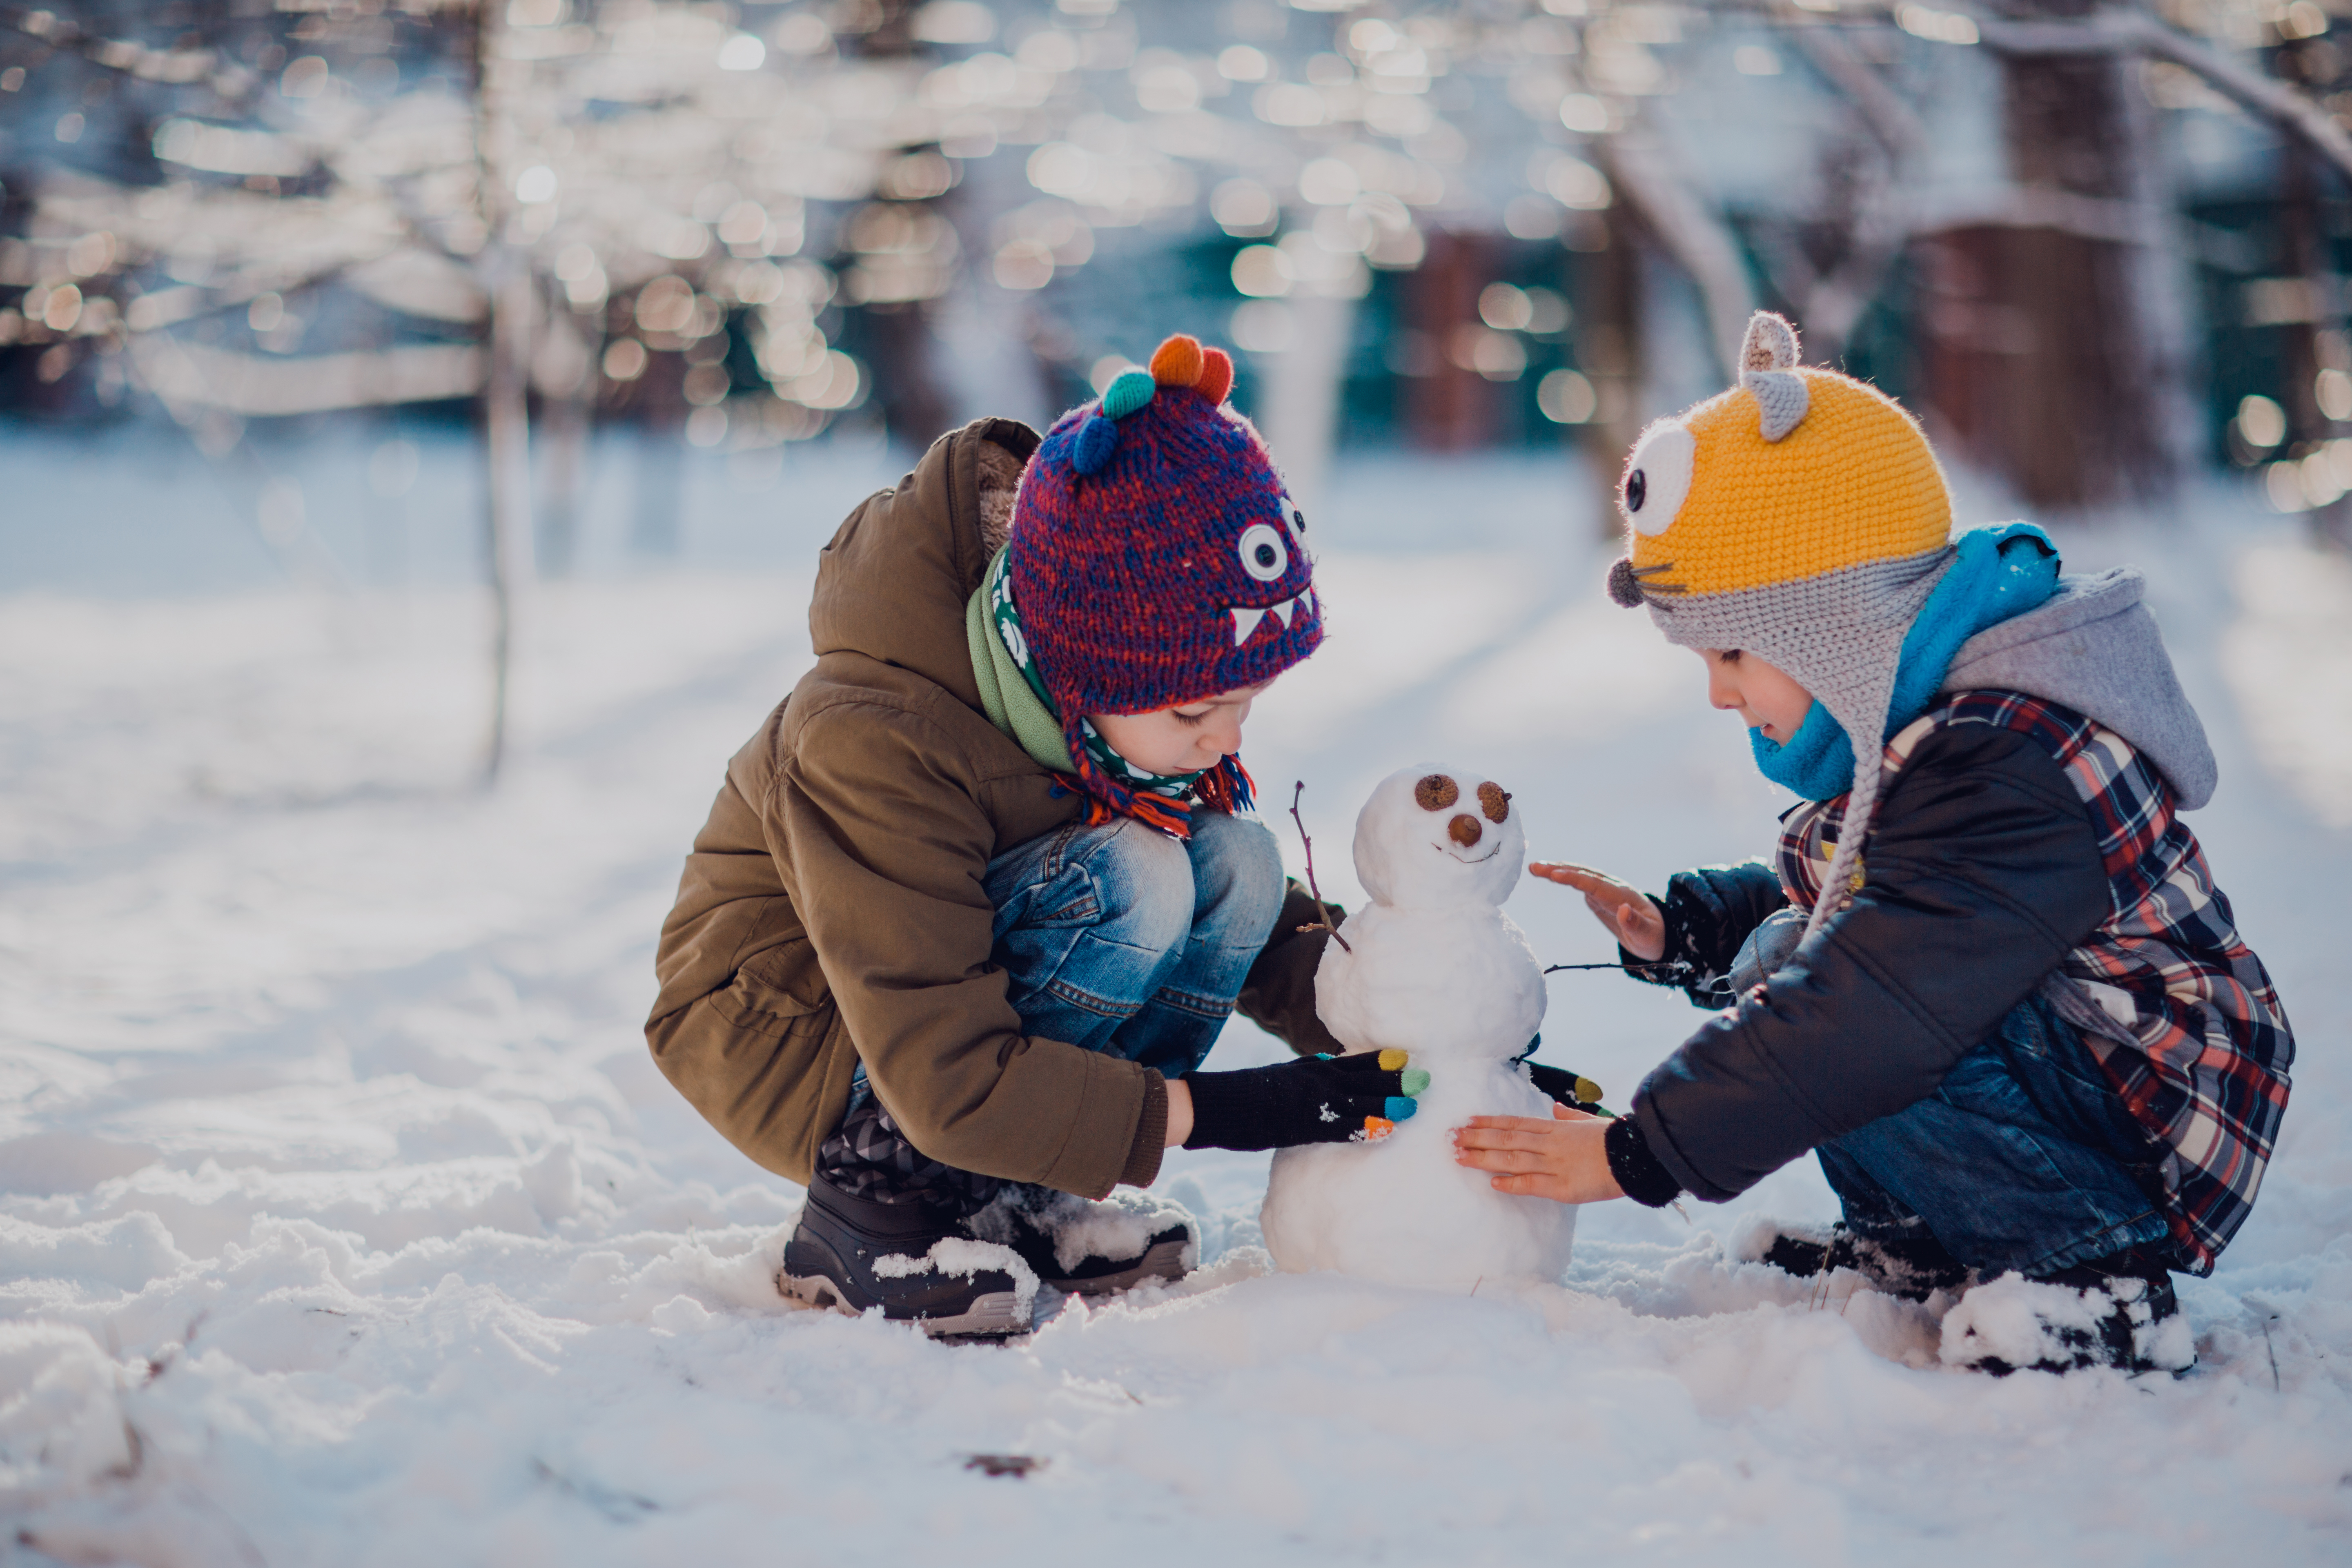 Children play outdoors | Source: Shutterstock